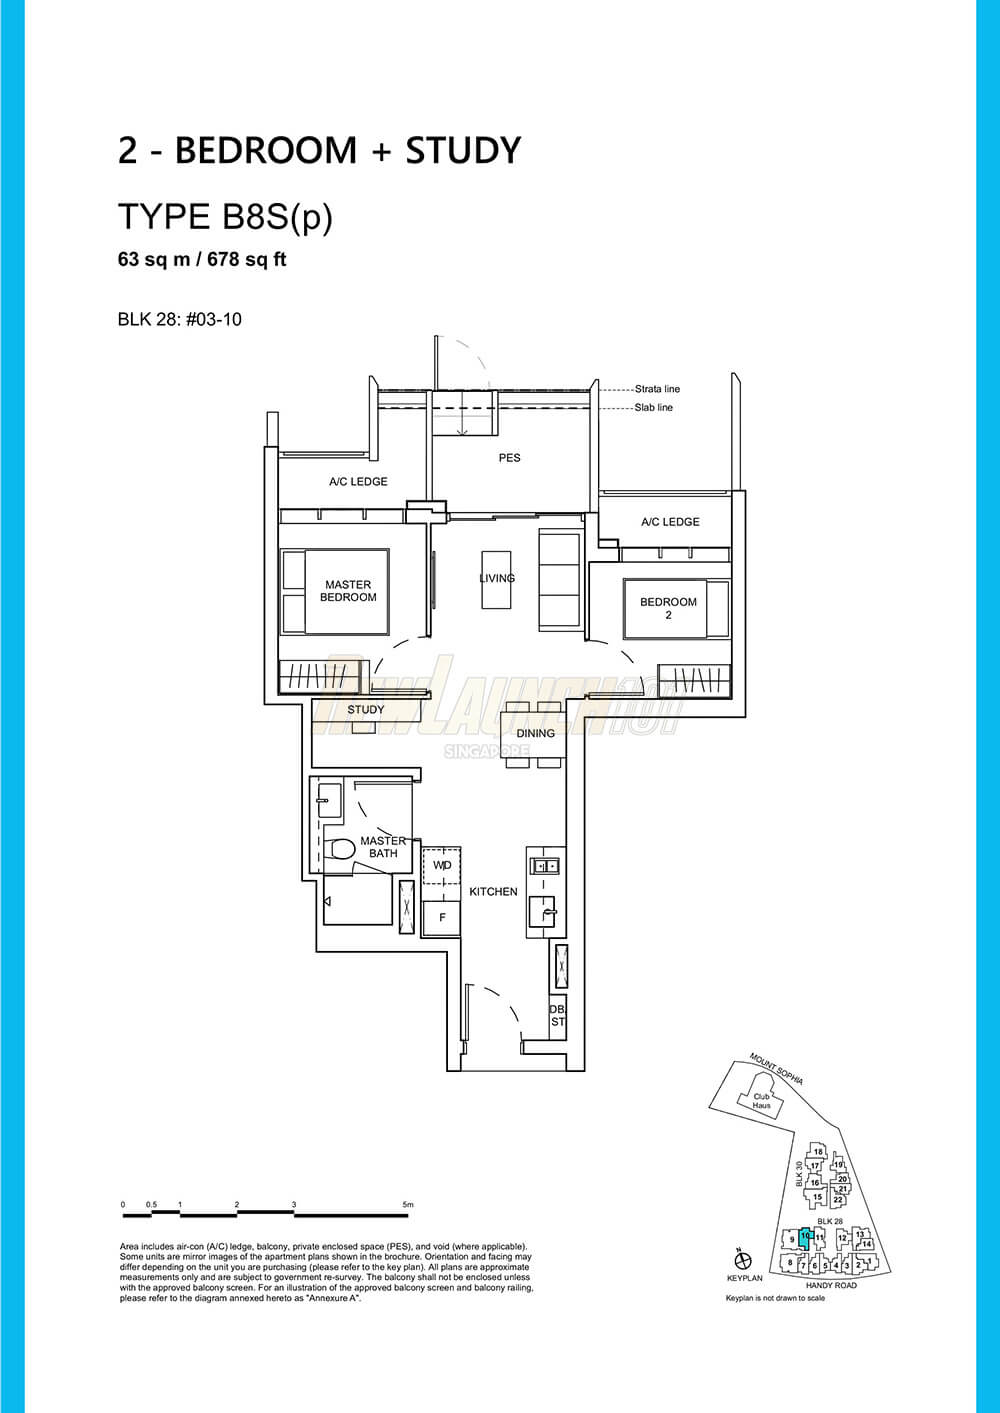 Haus on Handy Floor Plan 2-Bedroom Study Type B8Sp